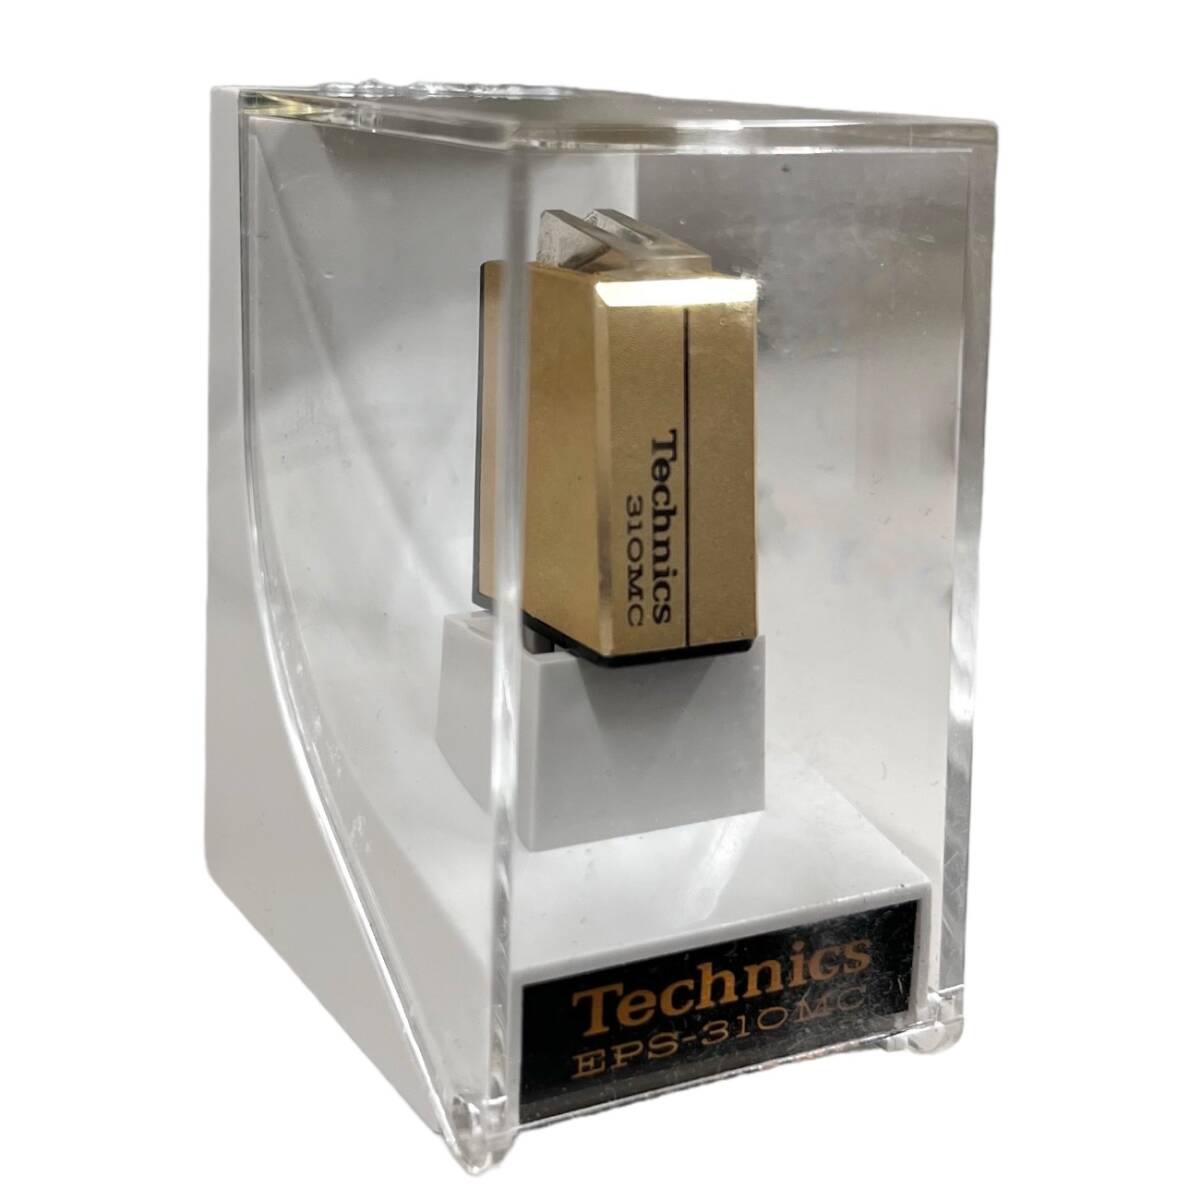 Technics Technics EPS-310MC MC cartridge exchange cartridge present condition goods 